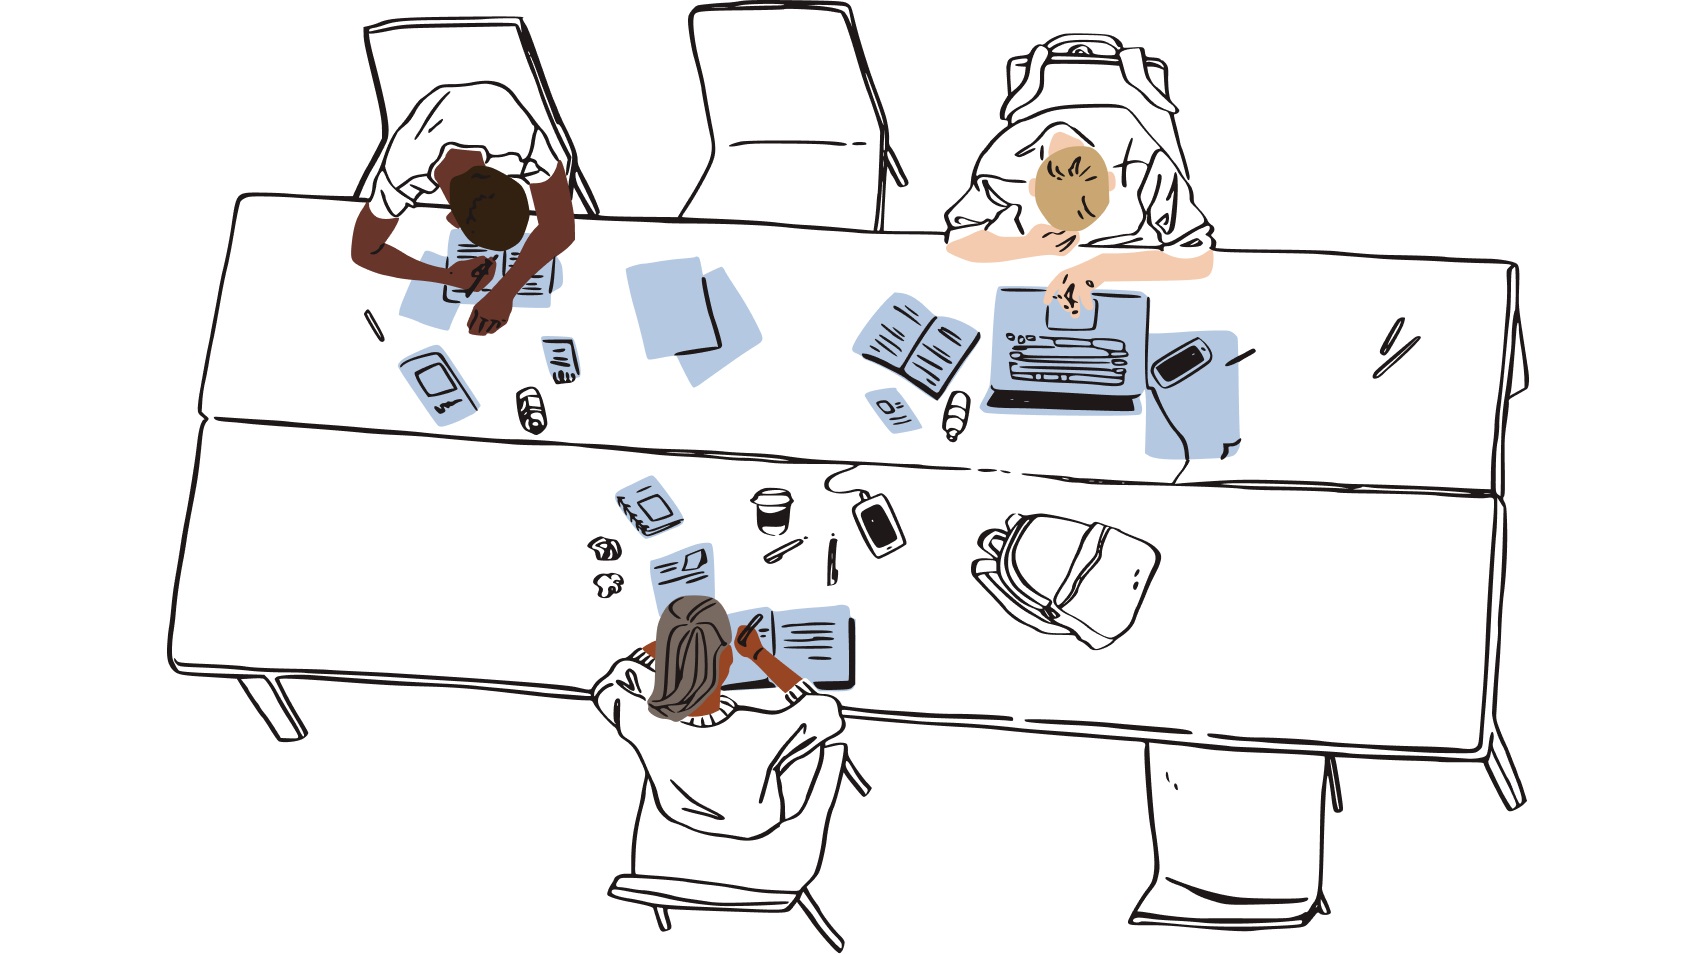 Personas trabajando con varios dispositivos en un escritorio desordenado lleno de archivos.